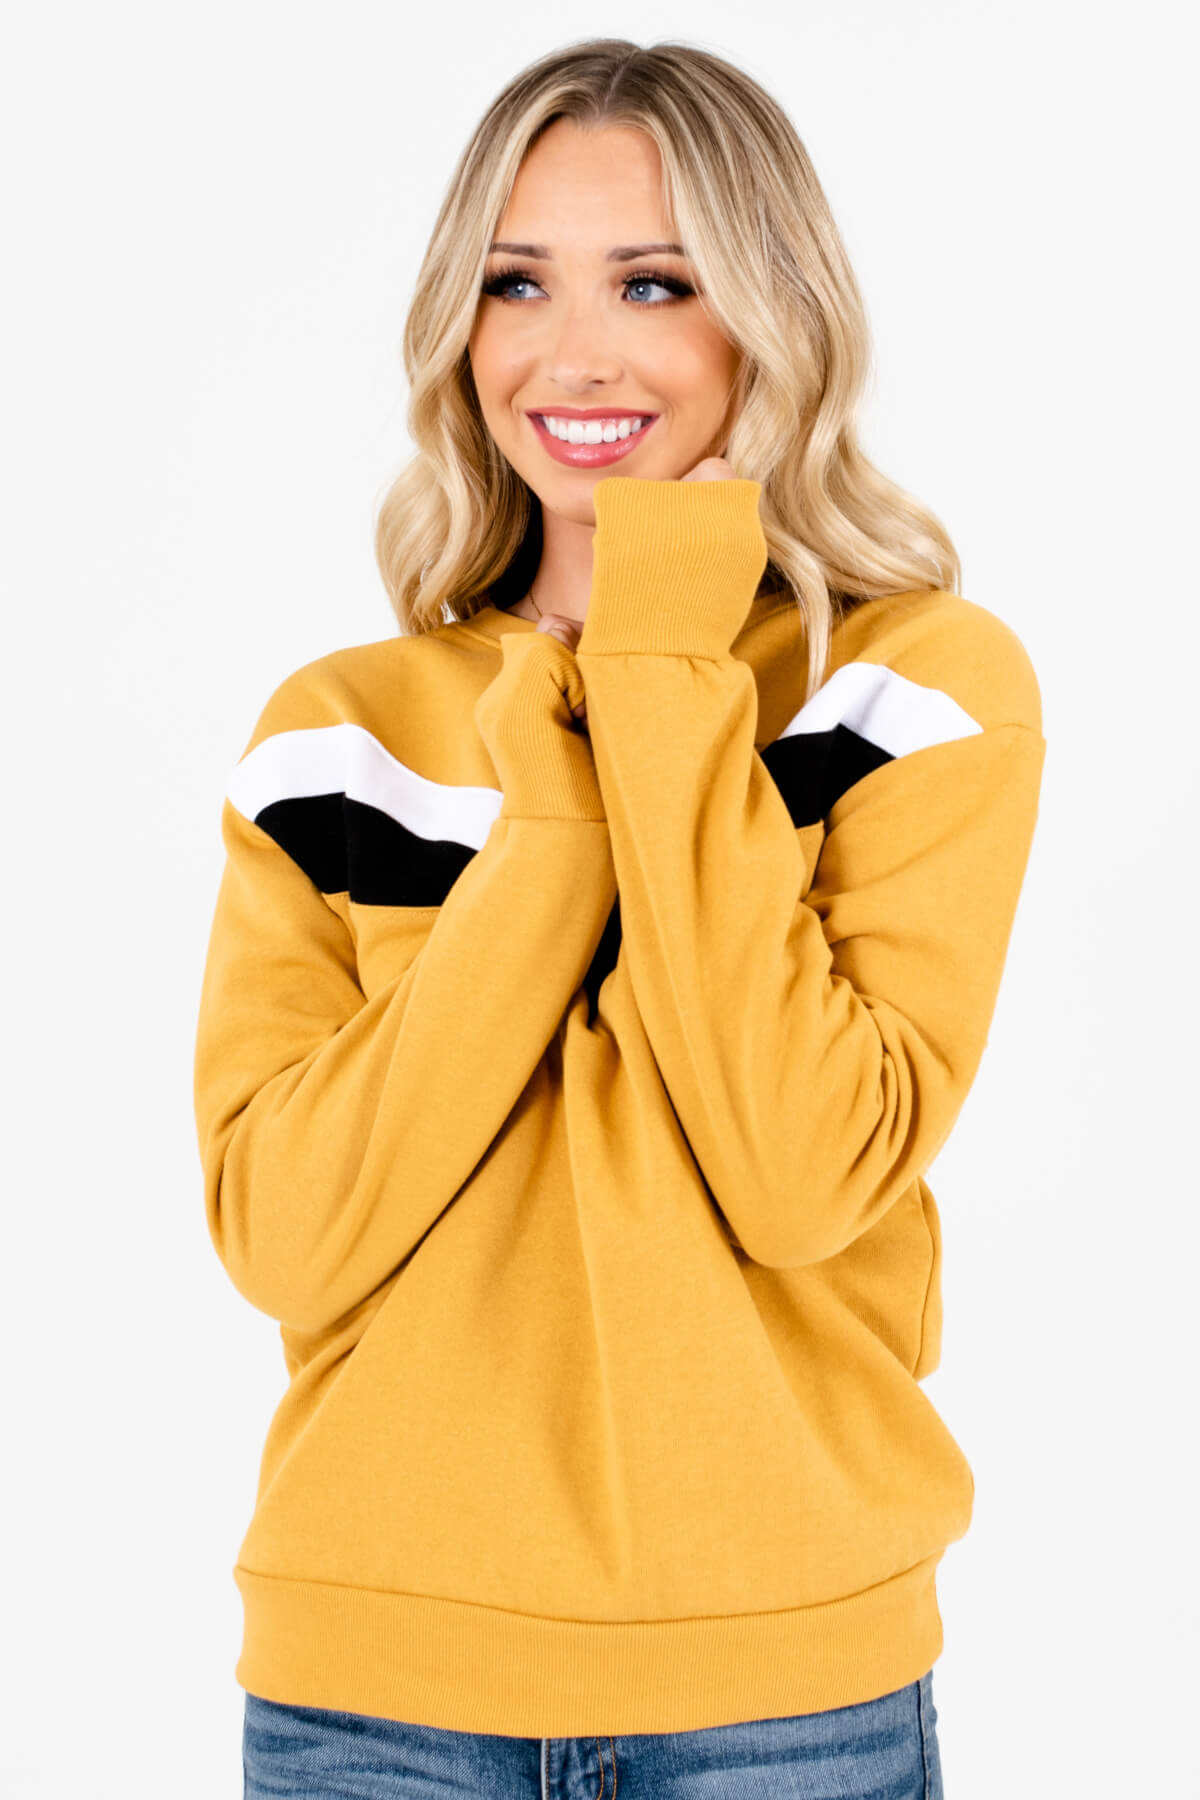 Women’s Mustard Yellow Round Neckline Boutique Pullover